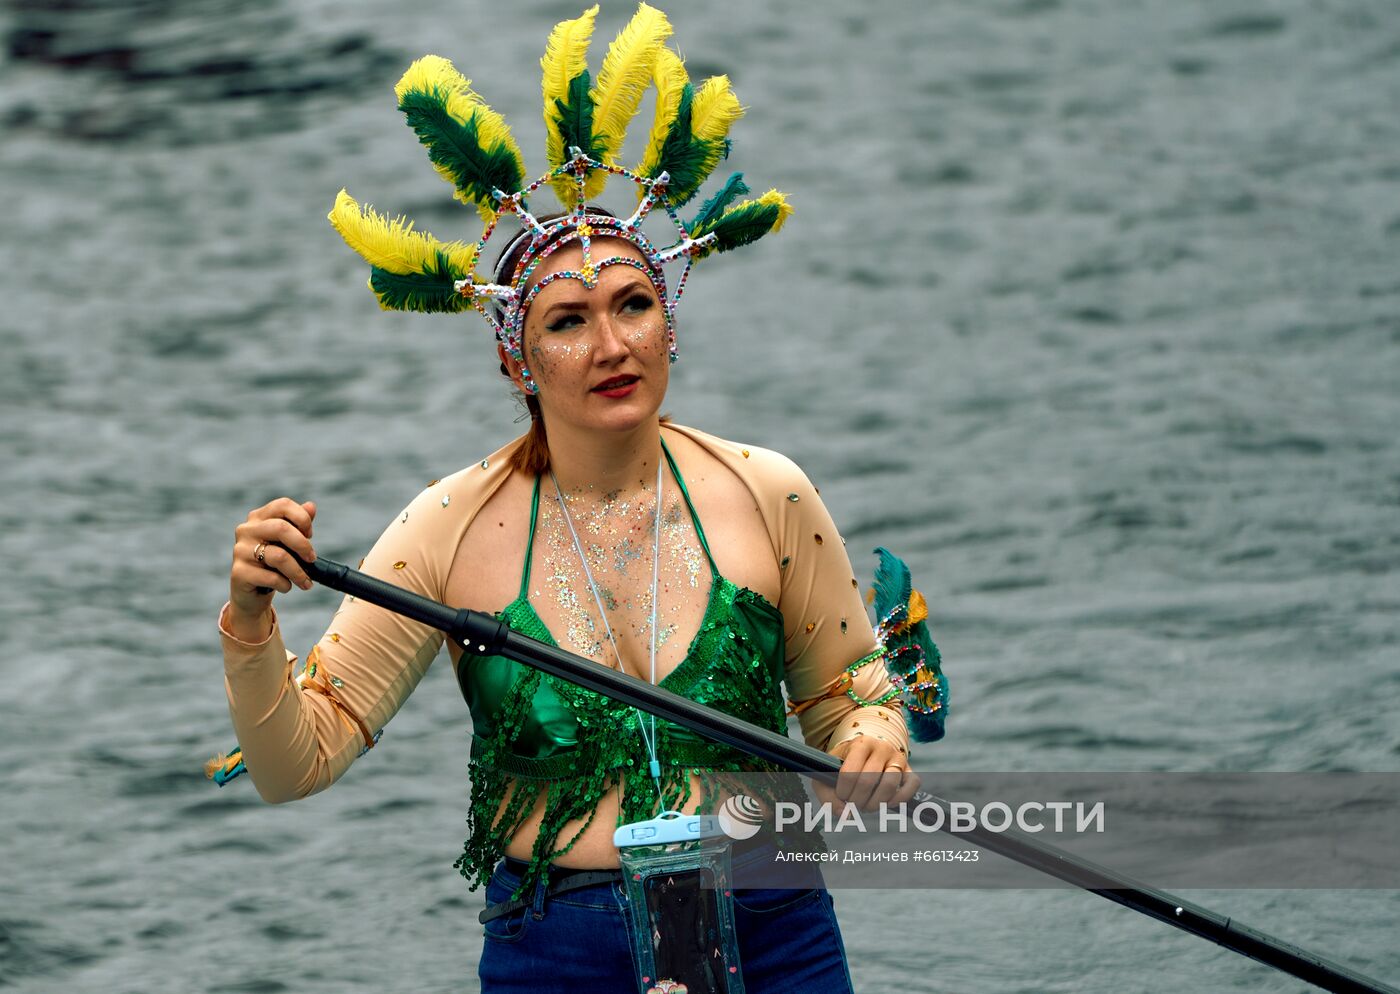 Фестиваль "Фонтанка-SUP" в Санкт-Петербурге